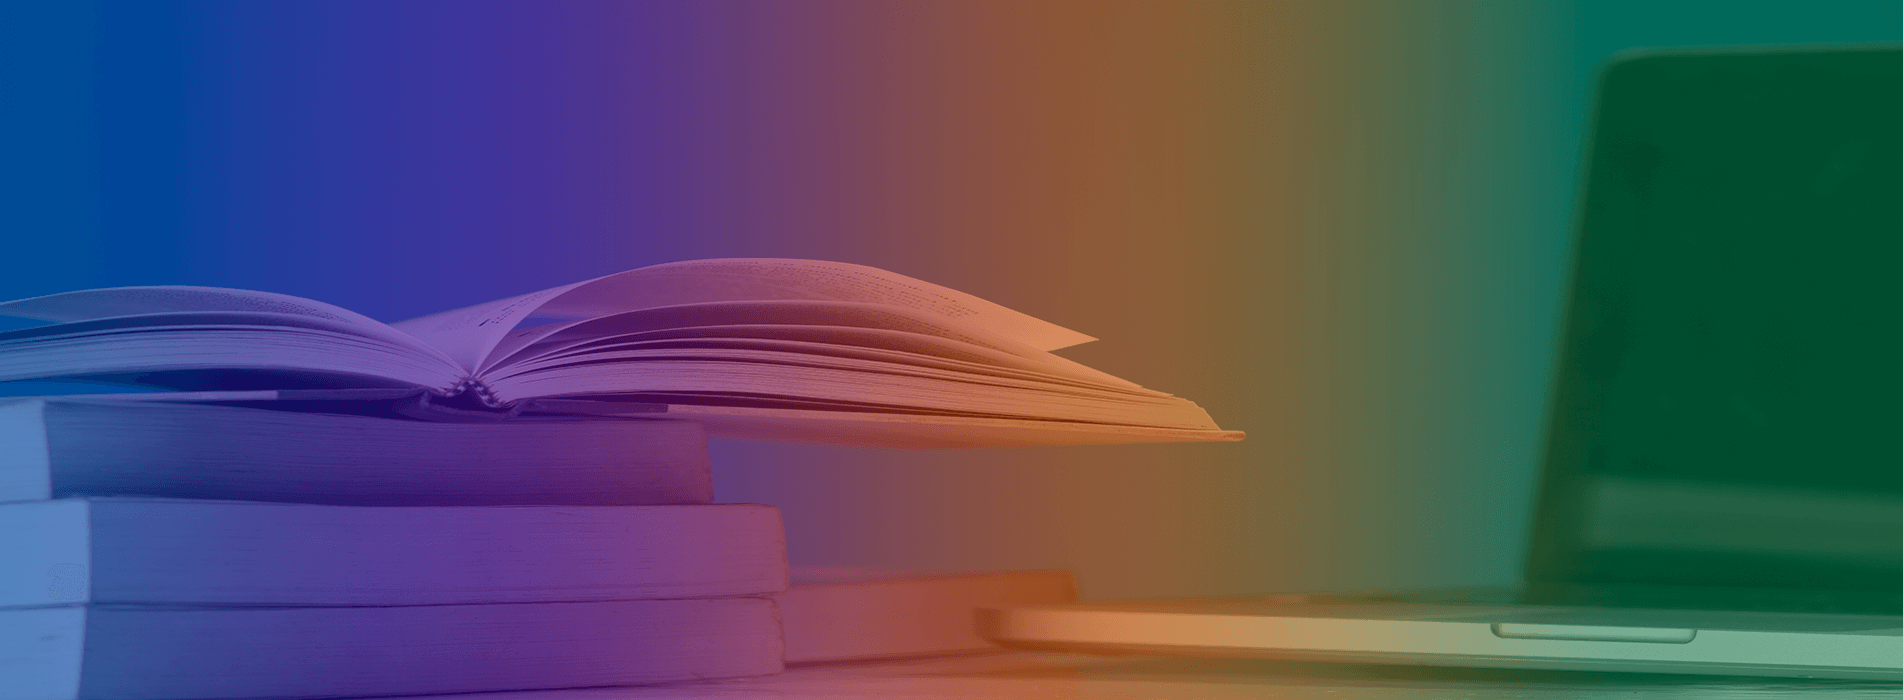 5 livros sobre tecnologia para ler em 2022 e aumentar seus conhecimentos